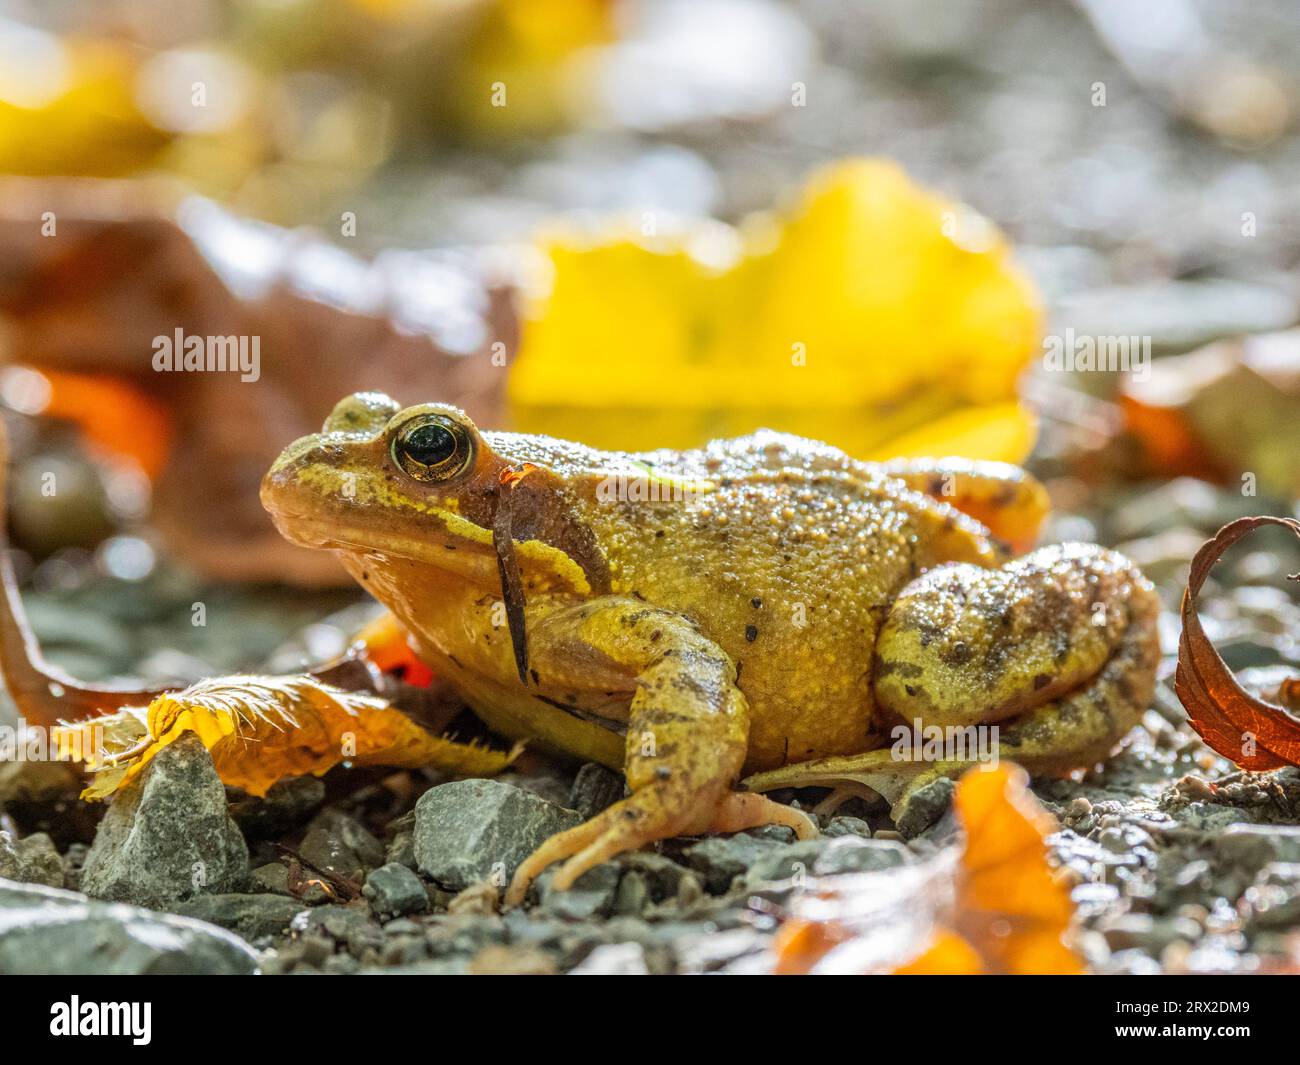 Une grenouille commune européenne adulte (Rana temporaria) au sol dans le parc national de Hainich, Thuringe, Allemagne, Europe Banque D'Images